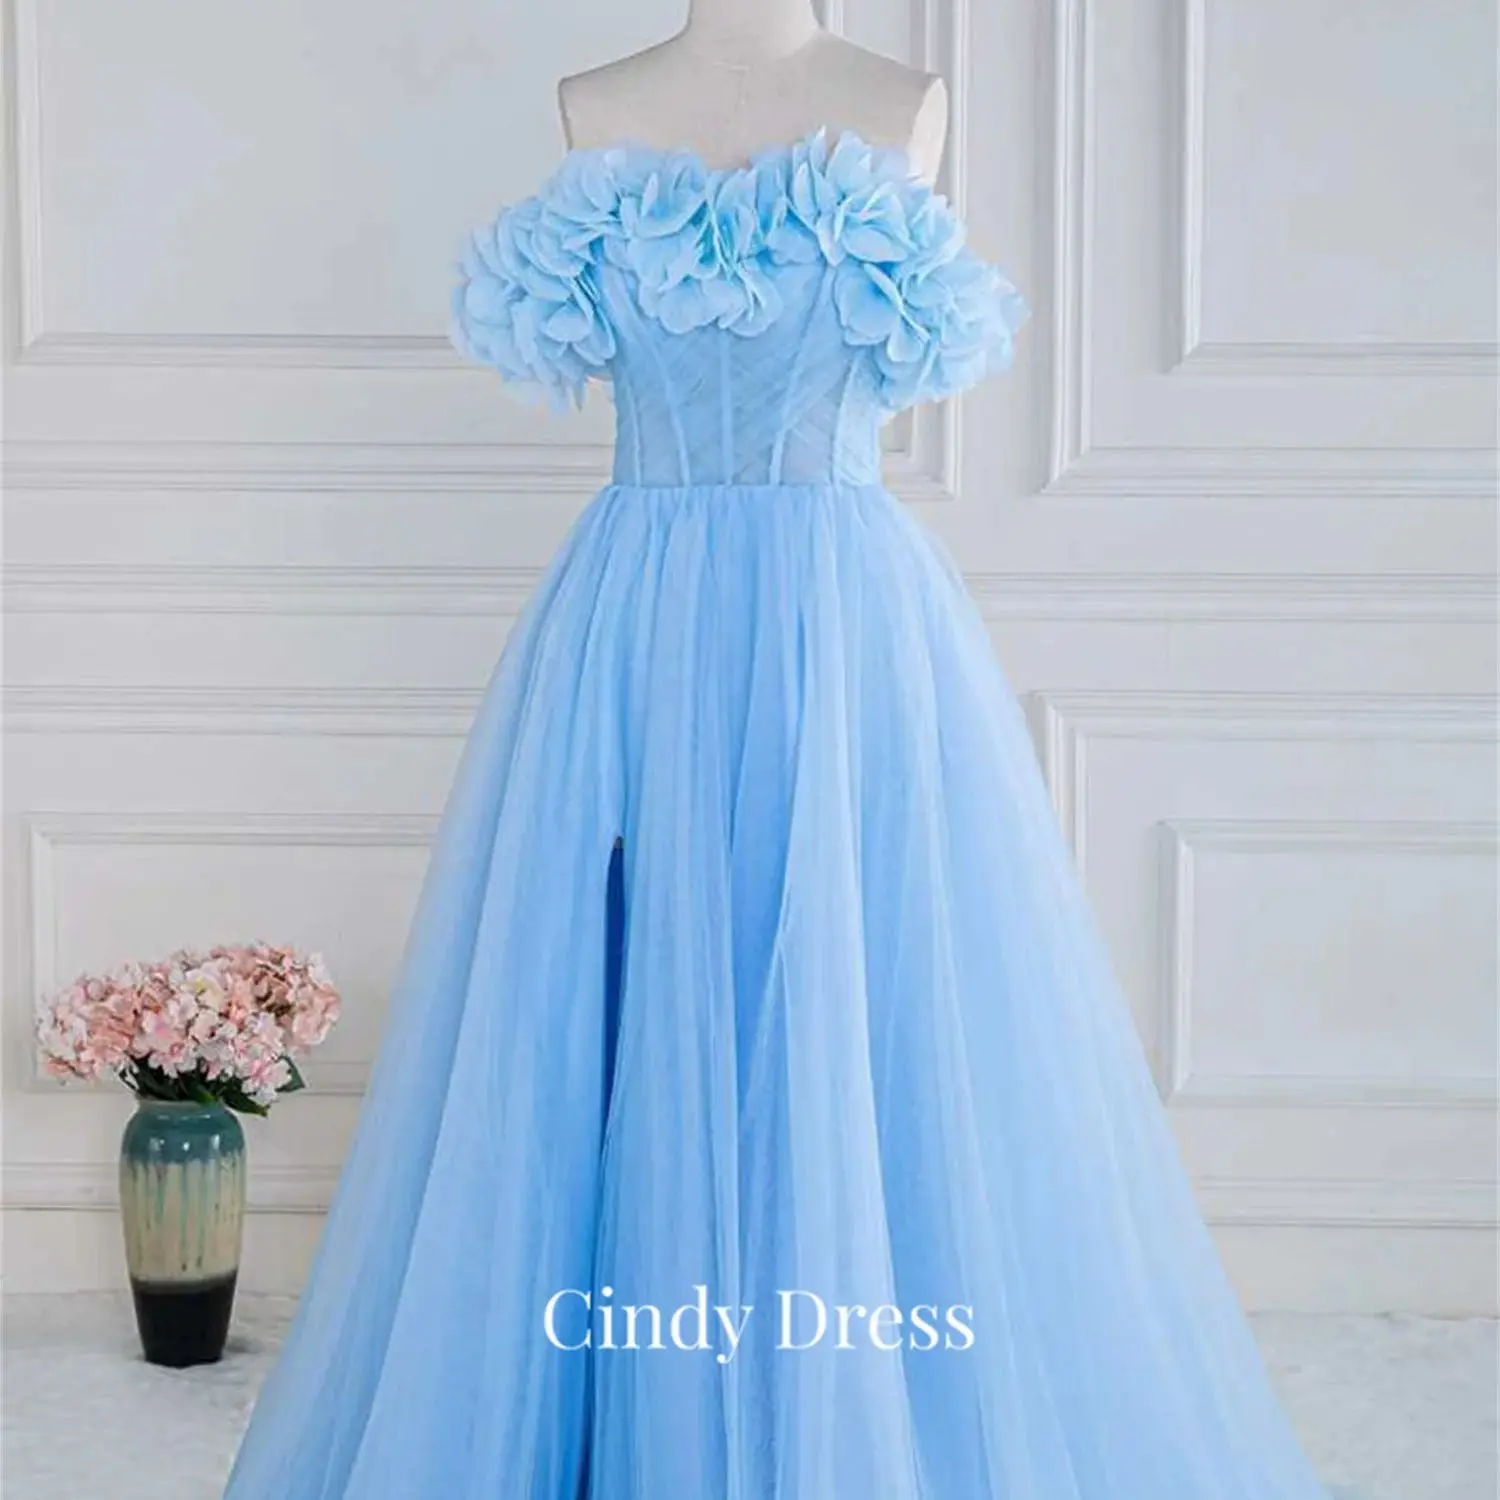 

Женское ТРАПЕЦИЕВИДНОЕ ПЛАТЬЕ Cindy, элегантное голубое платье с открытыми плечами и длинным шлейфом, блестящее коктейльное платье для свадьбы и выпускного вечера